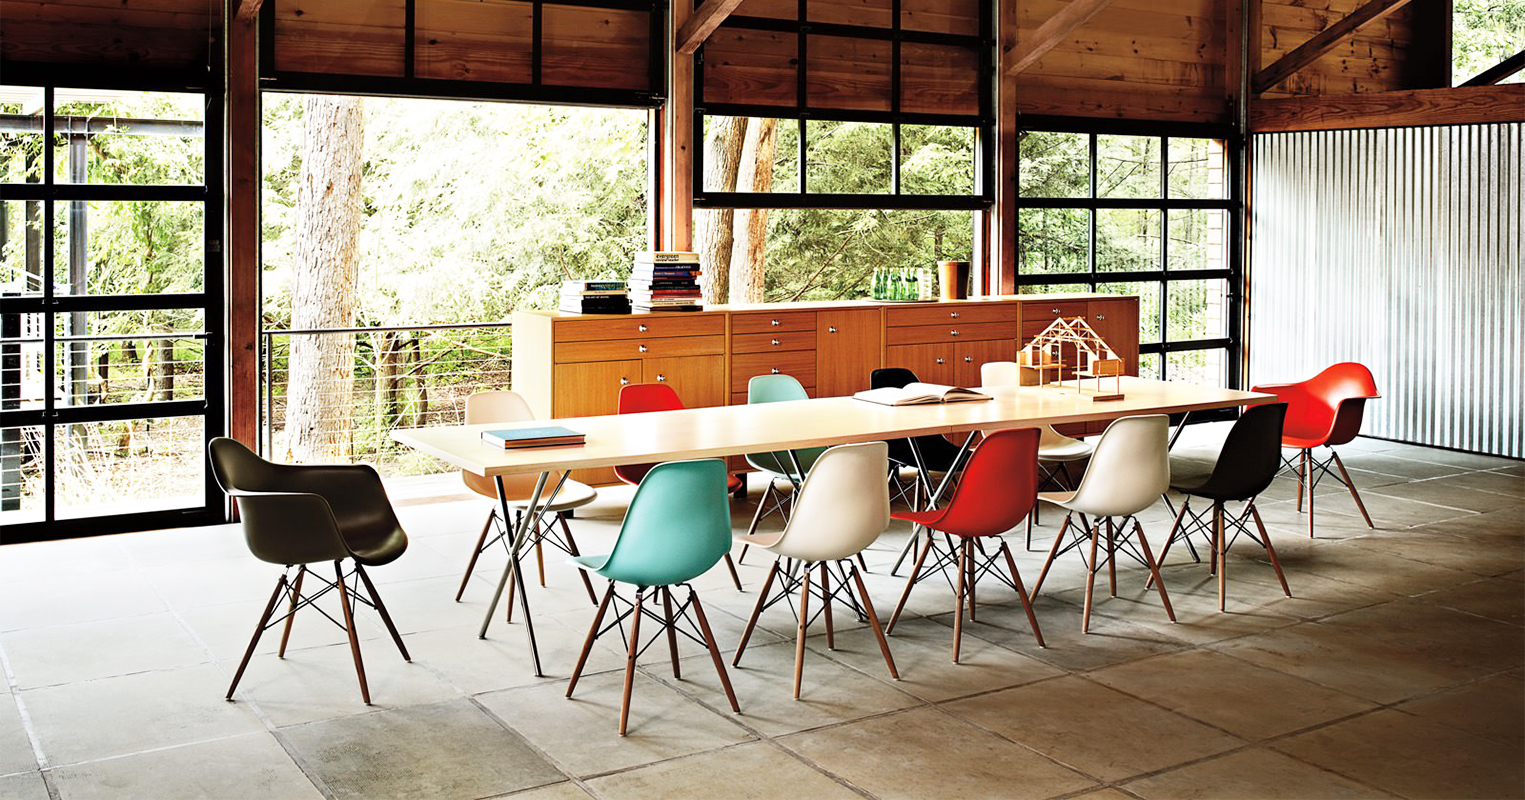 Ghế nhựa đúc chân gỗ phù hợp với nhiều không gian quán ăn, cafe, nhà hàng